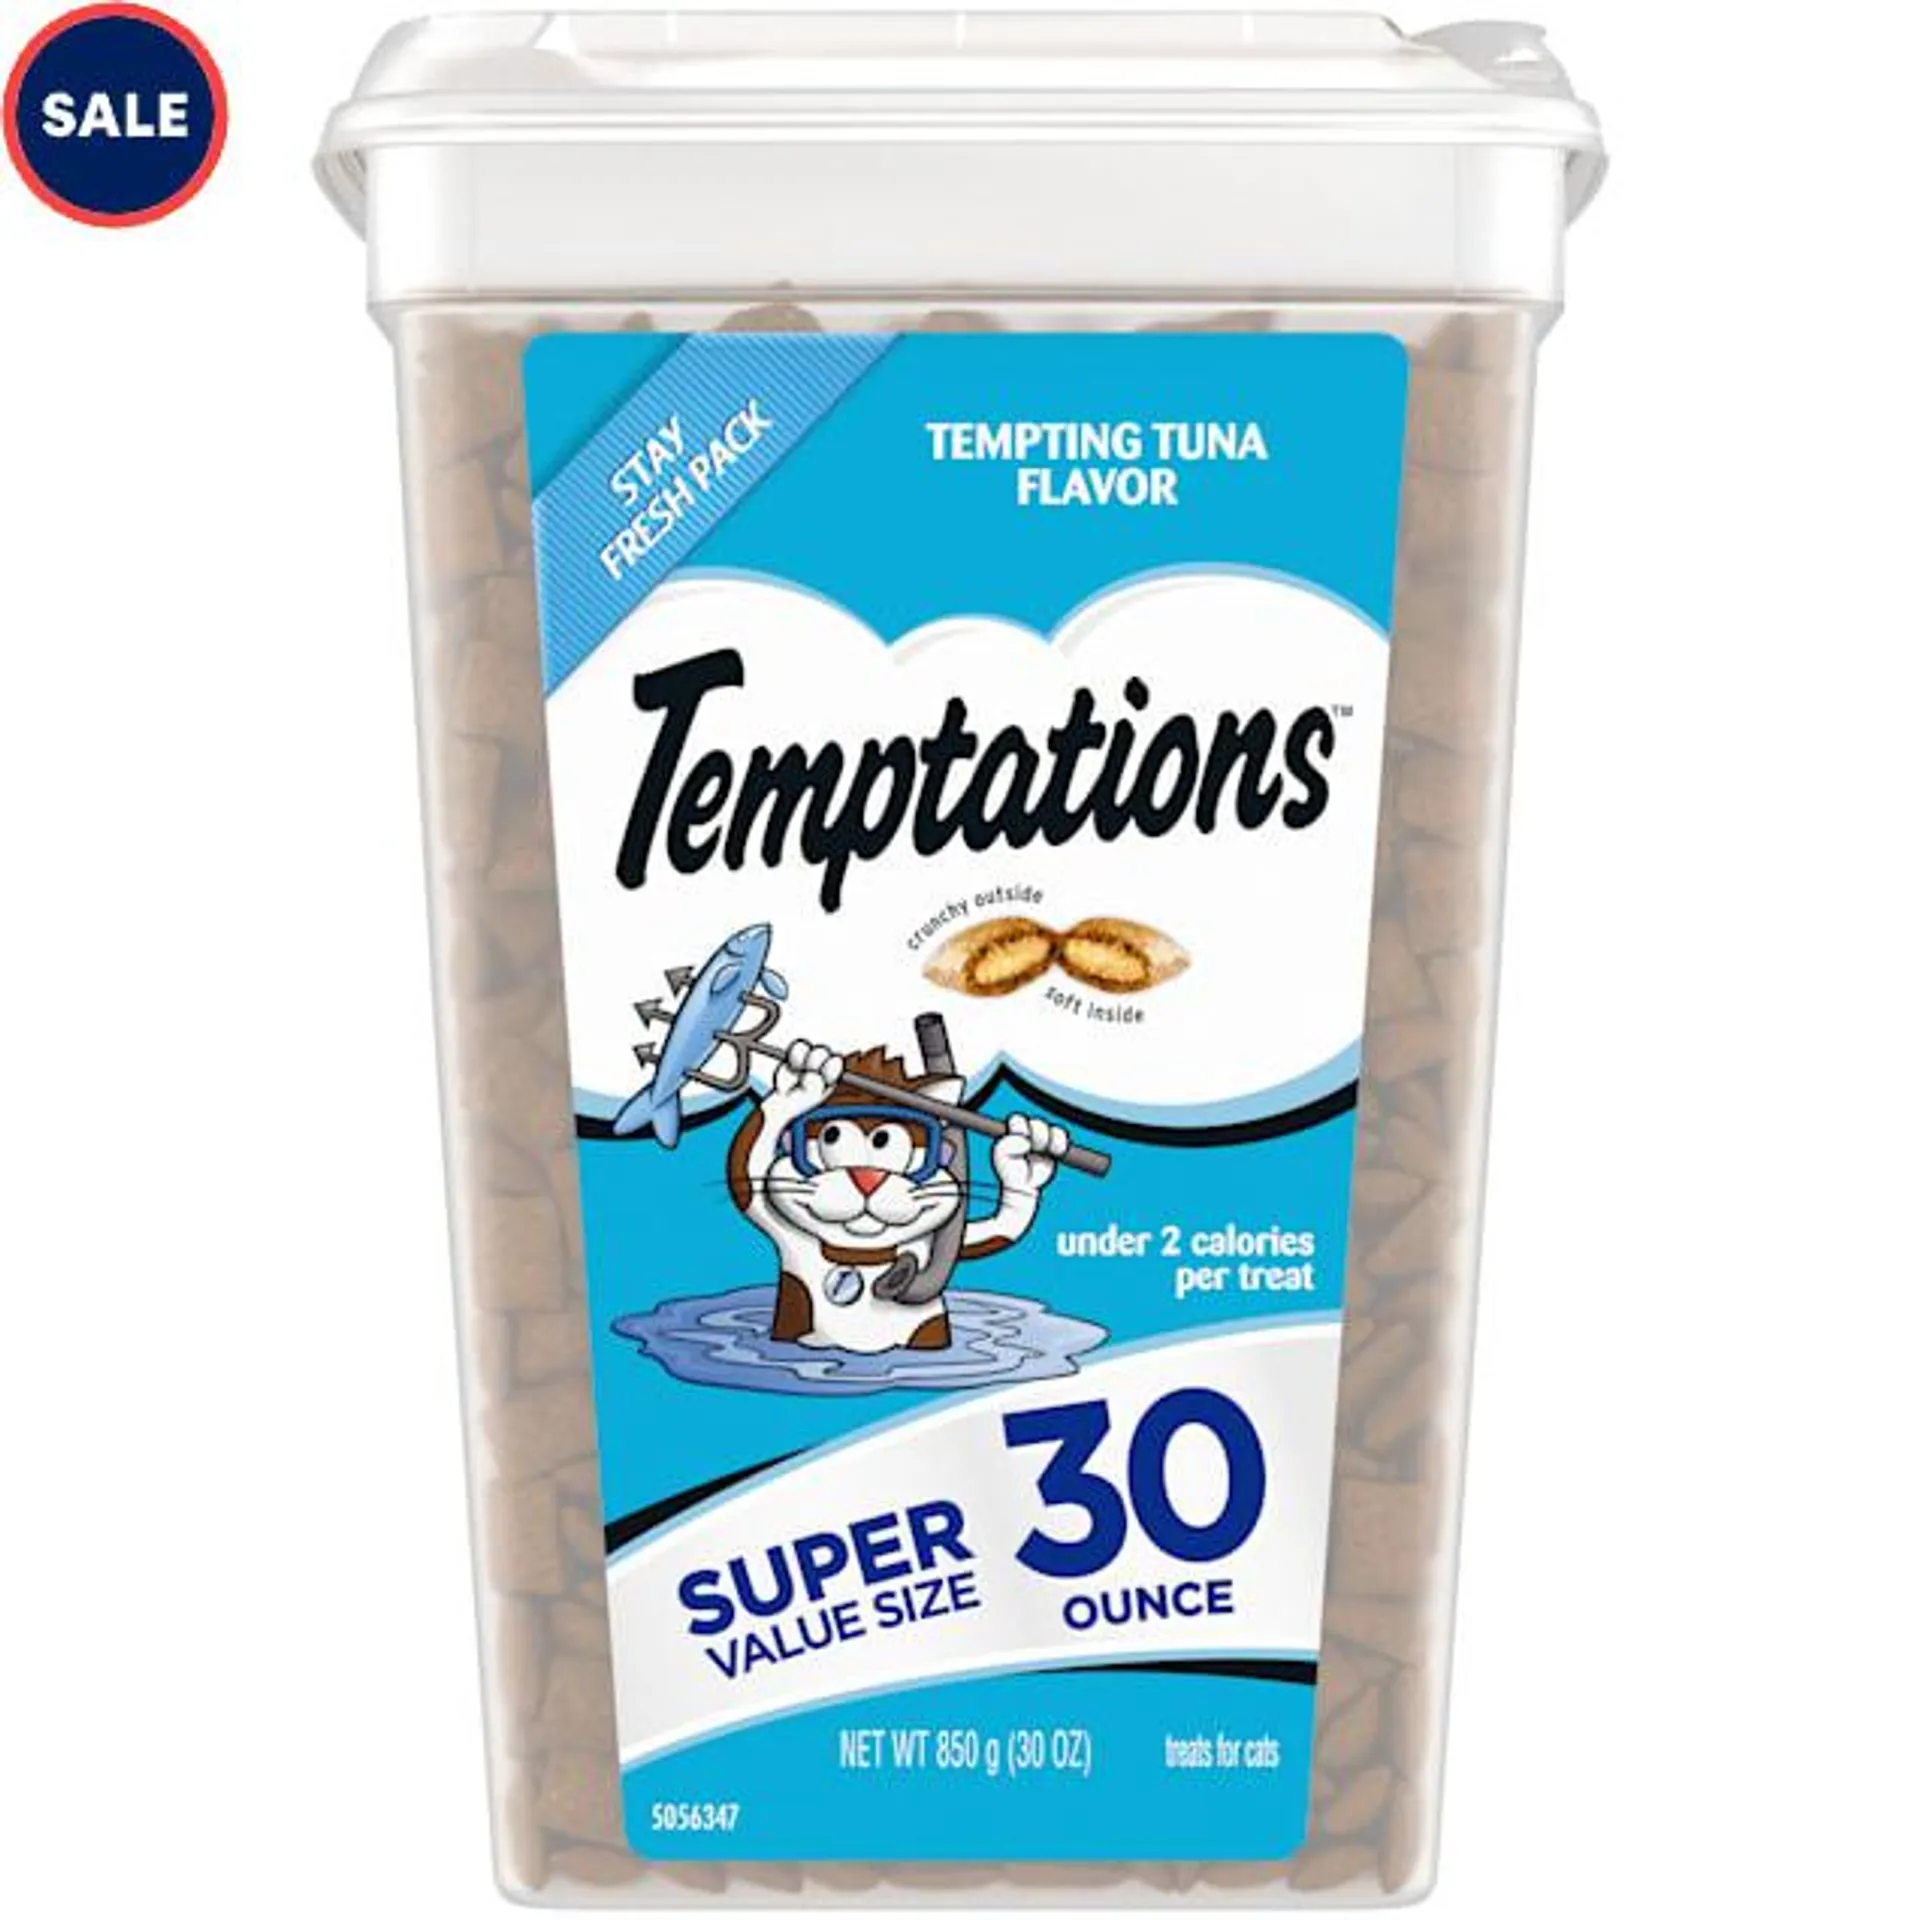 Temptations Classics Tempting Tuna Flavor Crunchy and Soft Cat Treats, 30 oz.